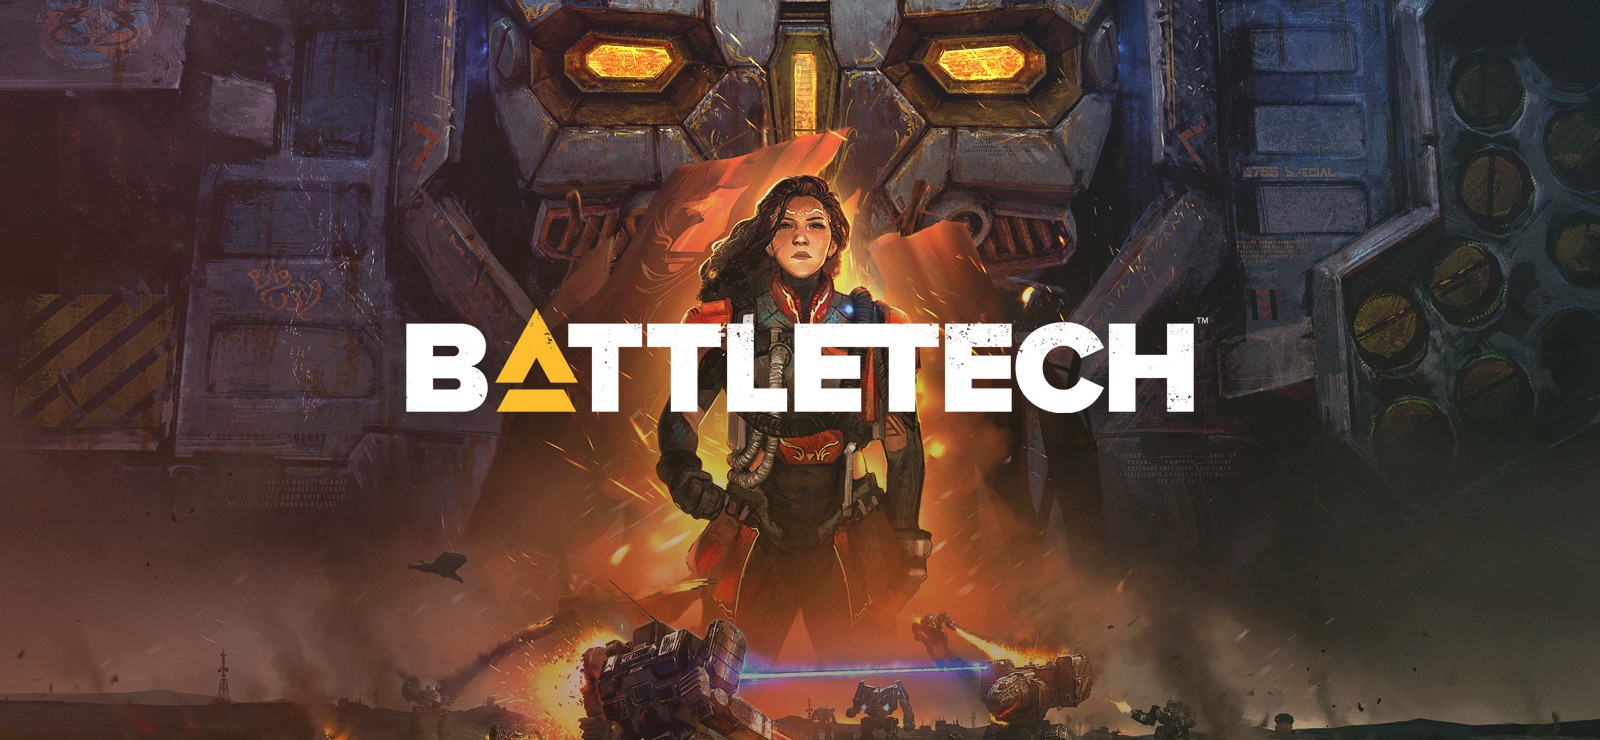 battletech kayıt sayfaları pdf indir